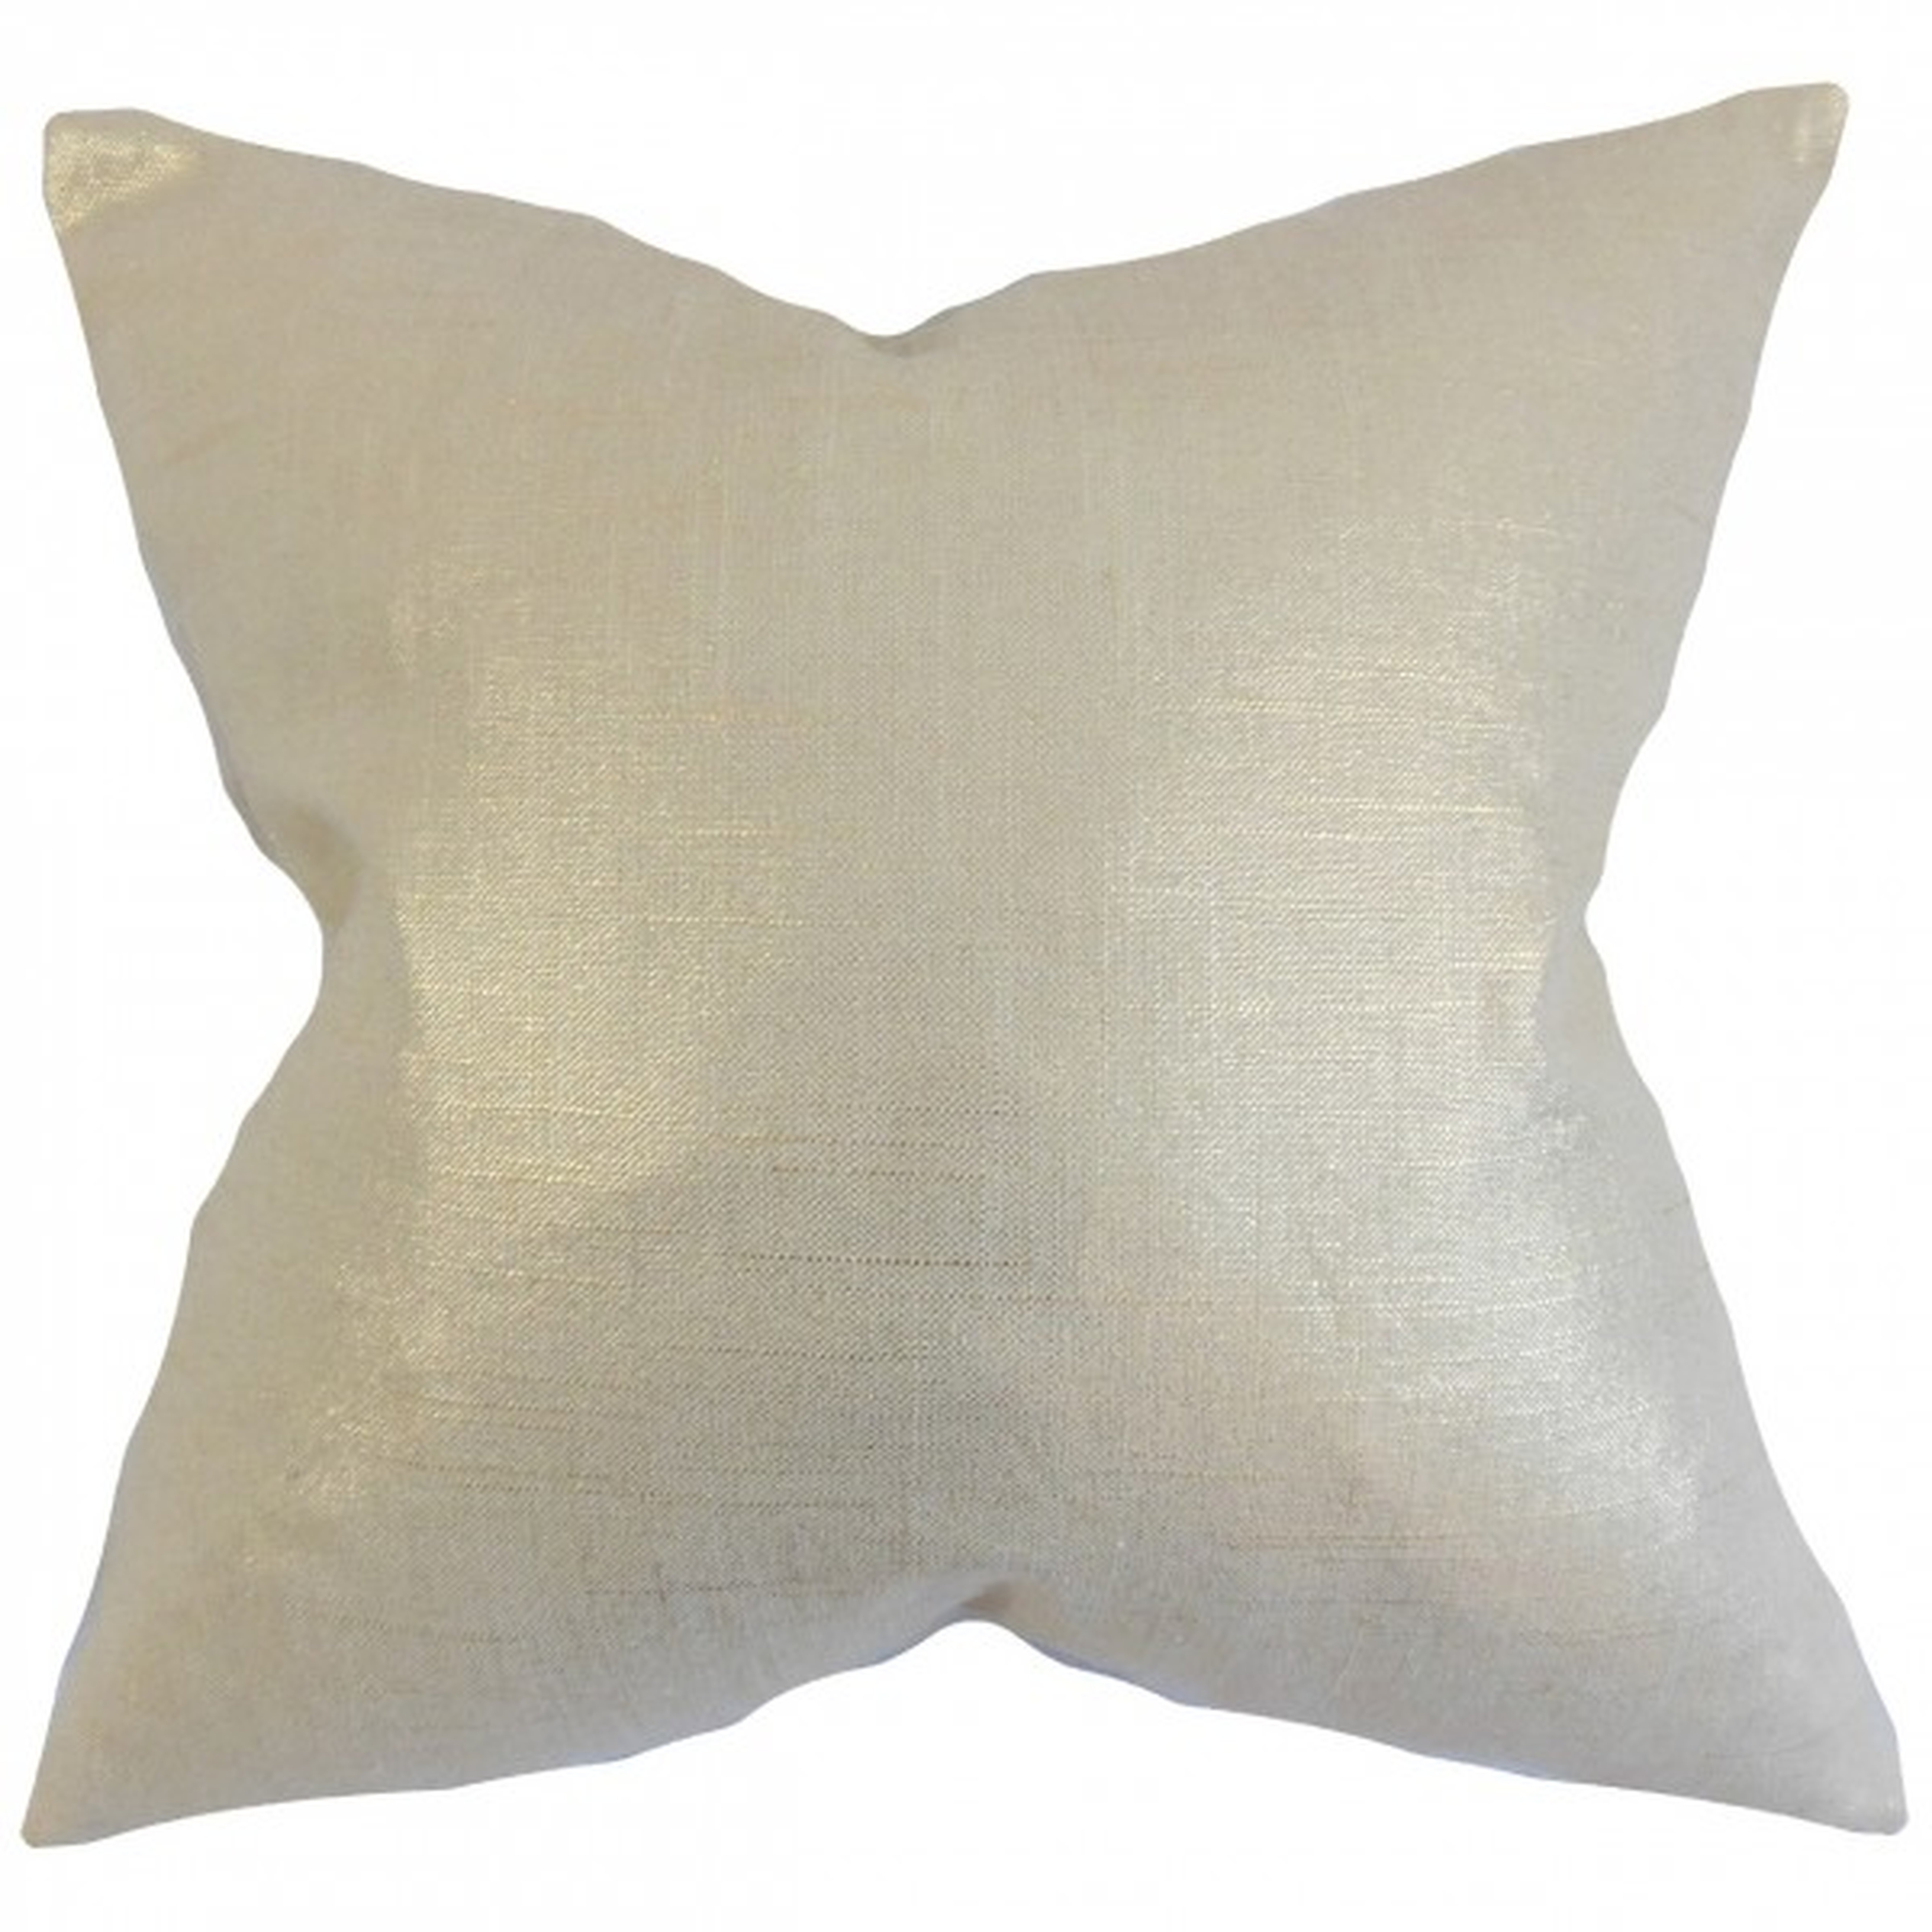 Florin Solid Pillow Antique Gold - 18" x 18" - Down Insert - Linen & Seam